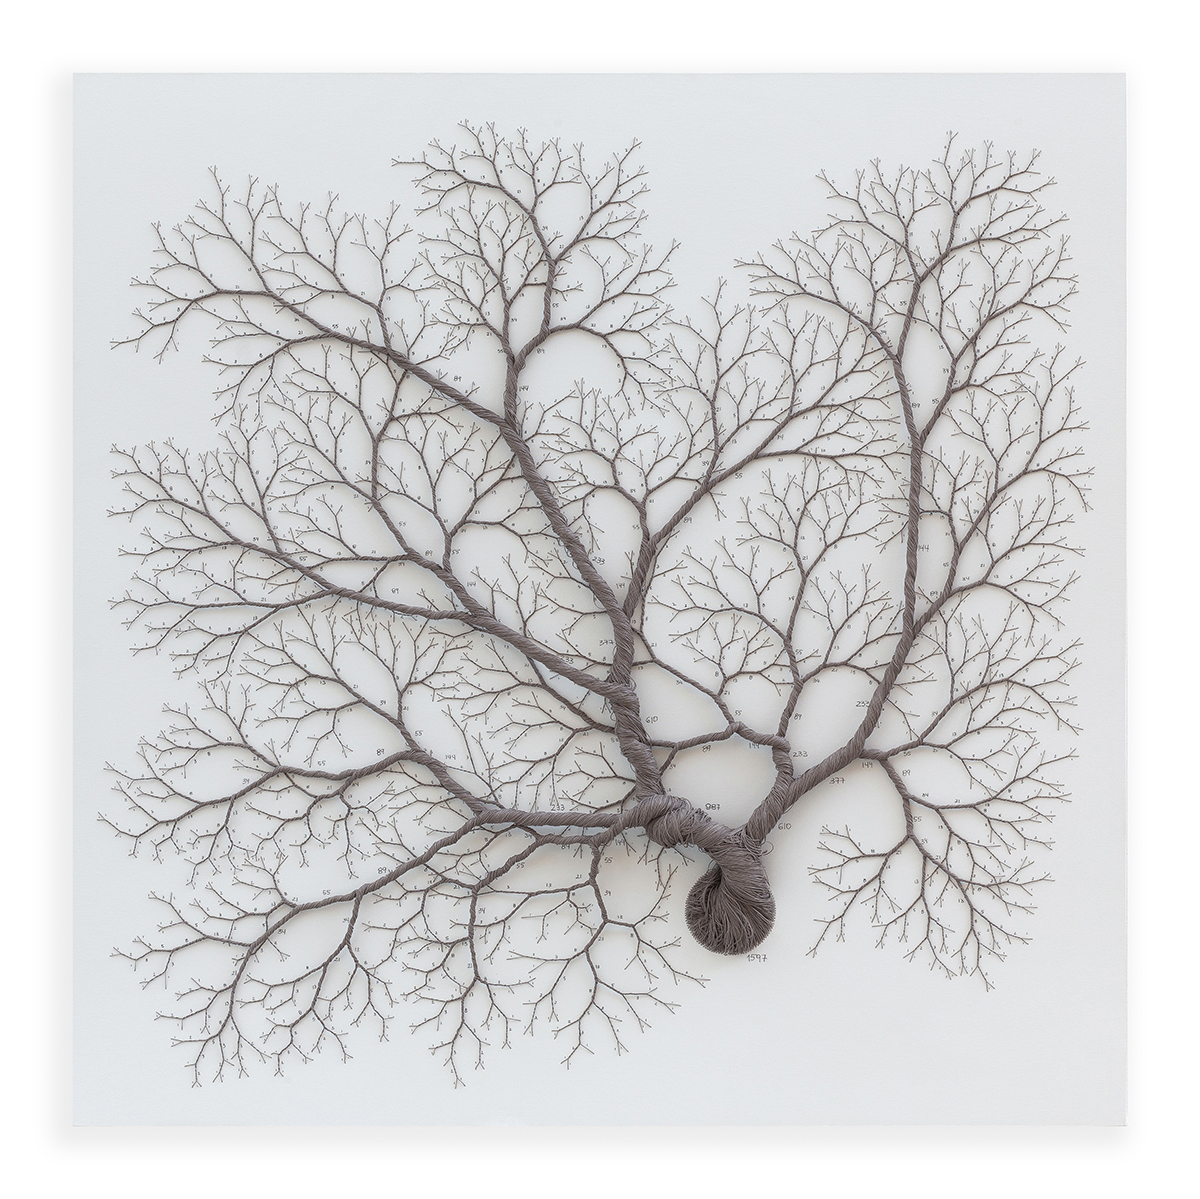 Ciclotramas Hypnotizing Tree And Roots Like Installations By Janaina Mello Landini 23